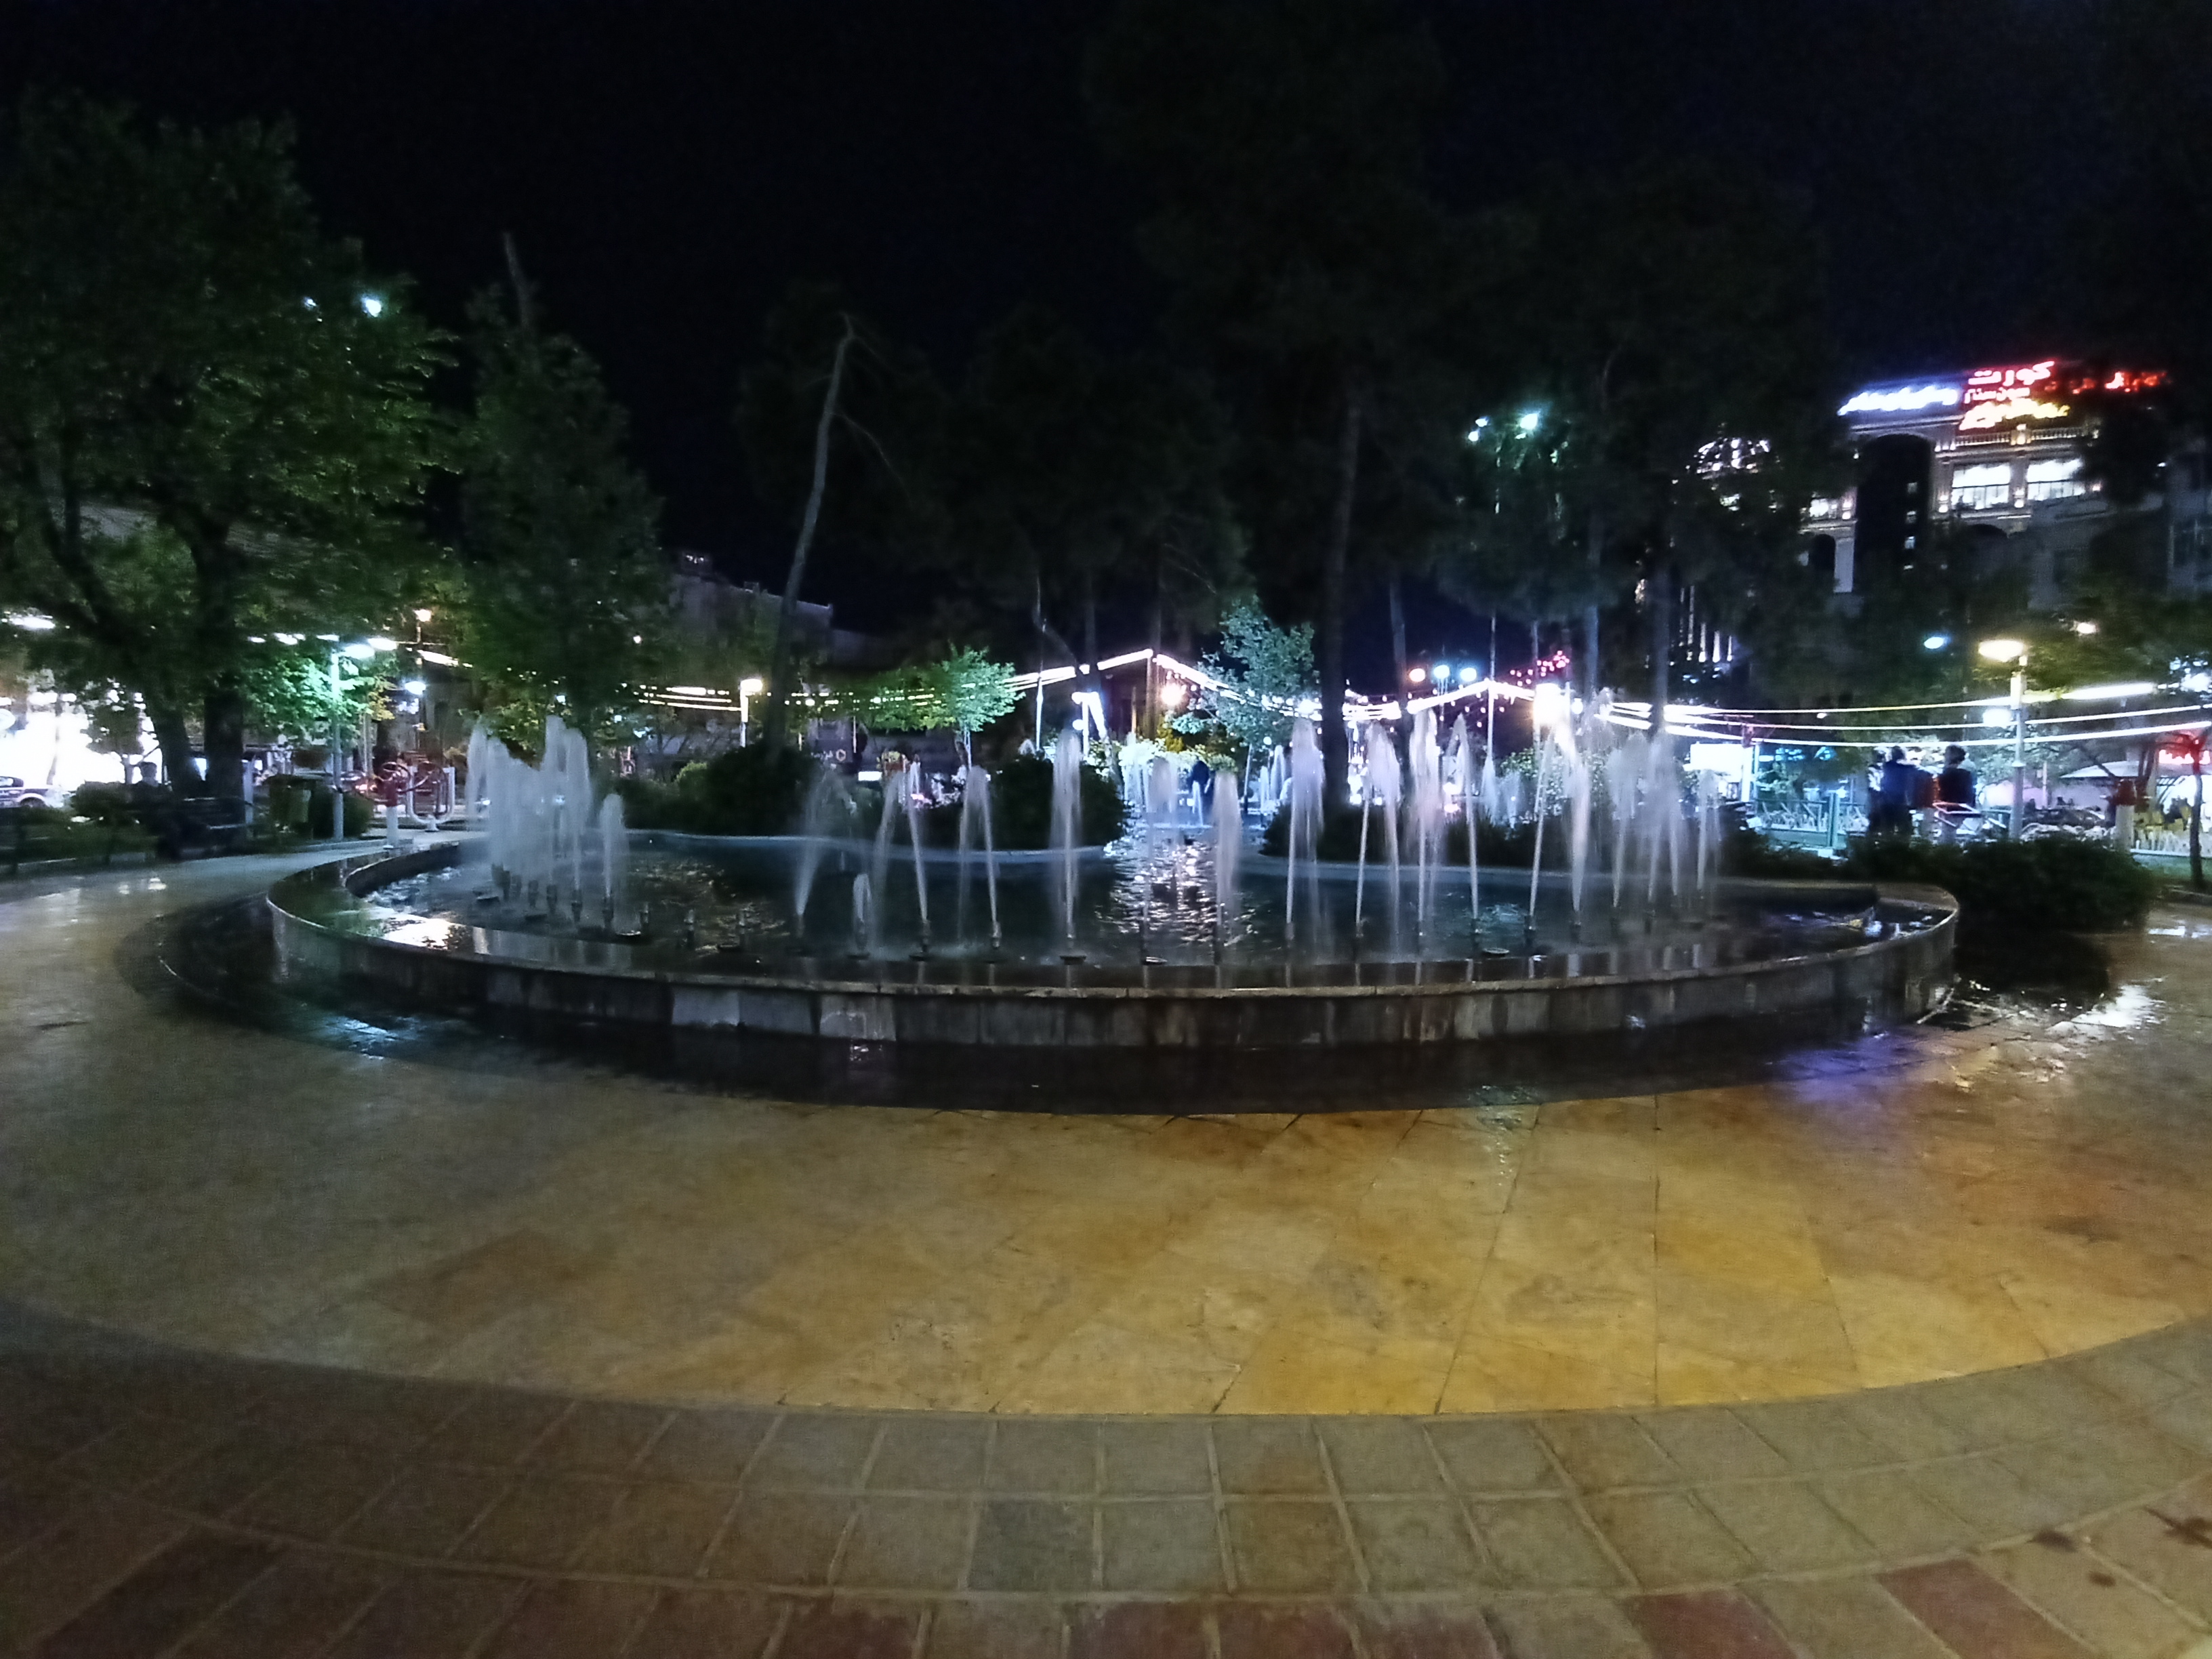 عکس نمونه دوربین اولترواید ال جی K61 در نور کم - حوضی در میدان هفت حوض